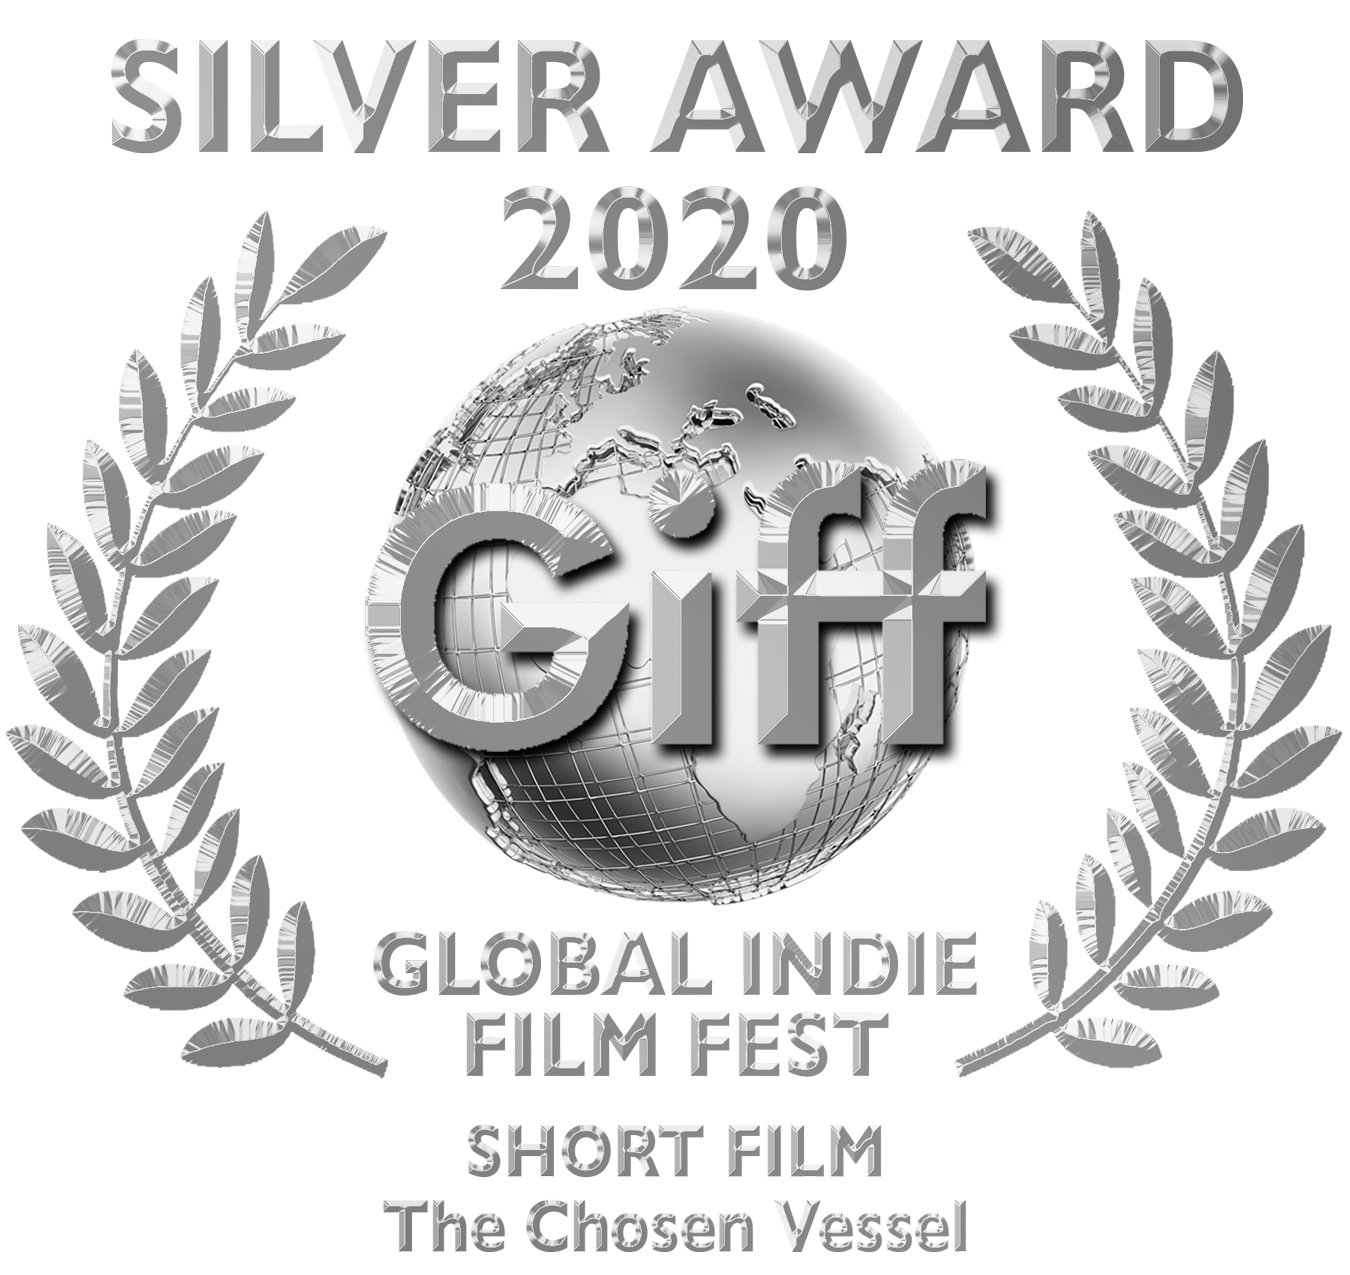 Giff Silver Award Short